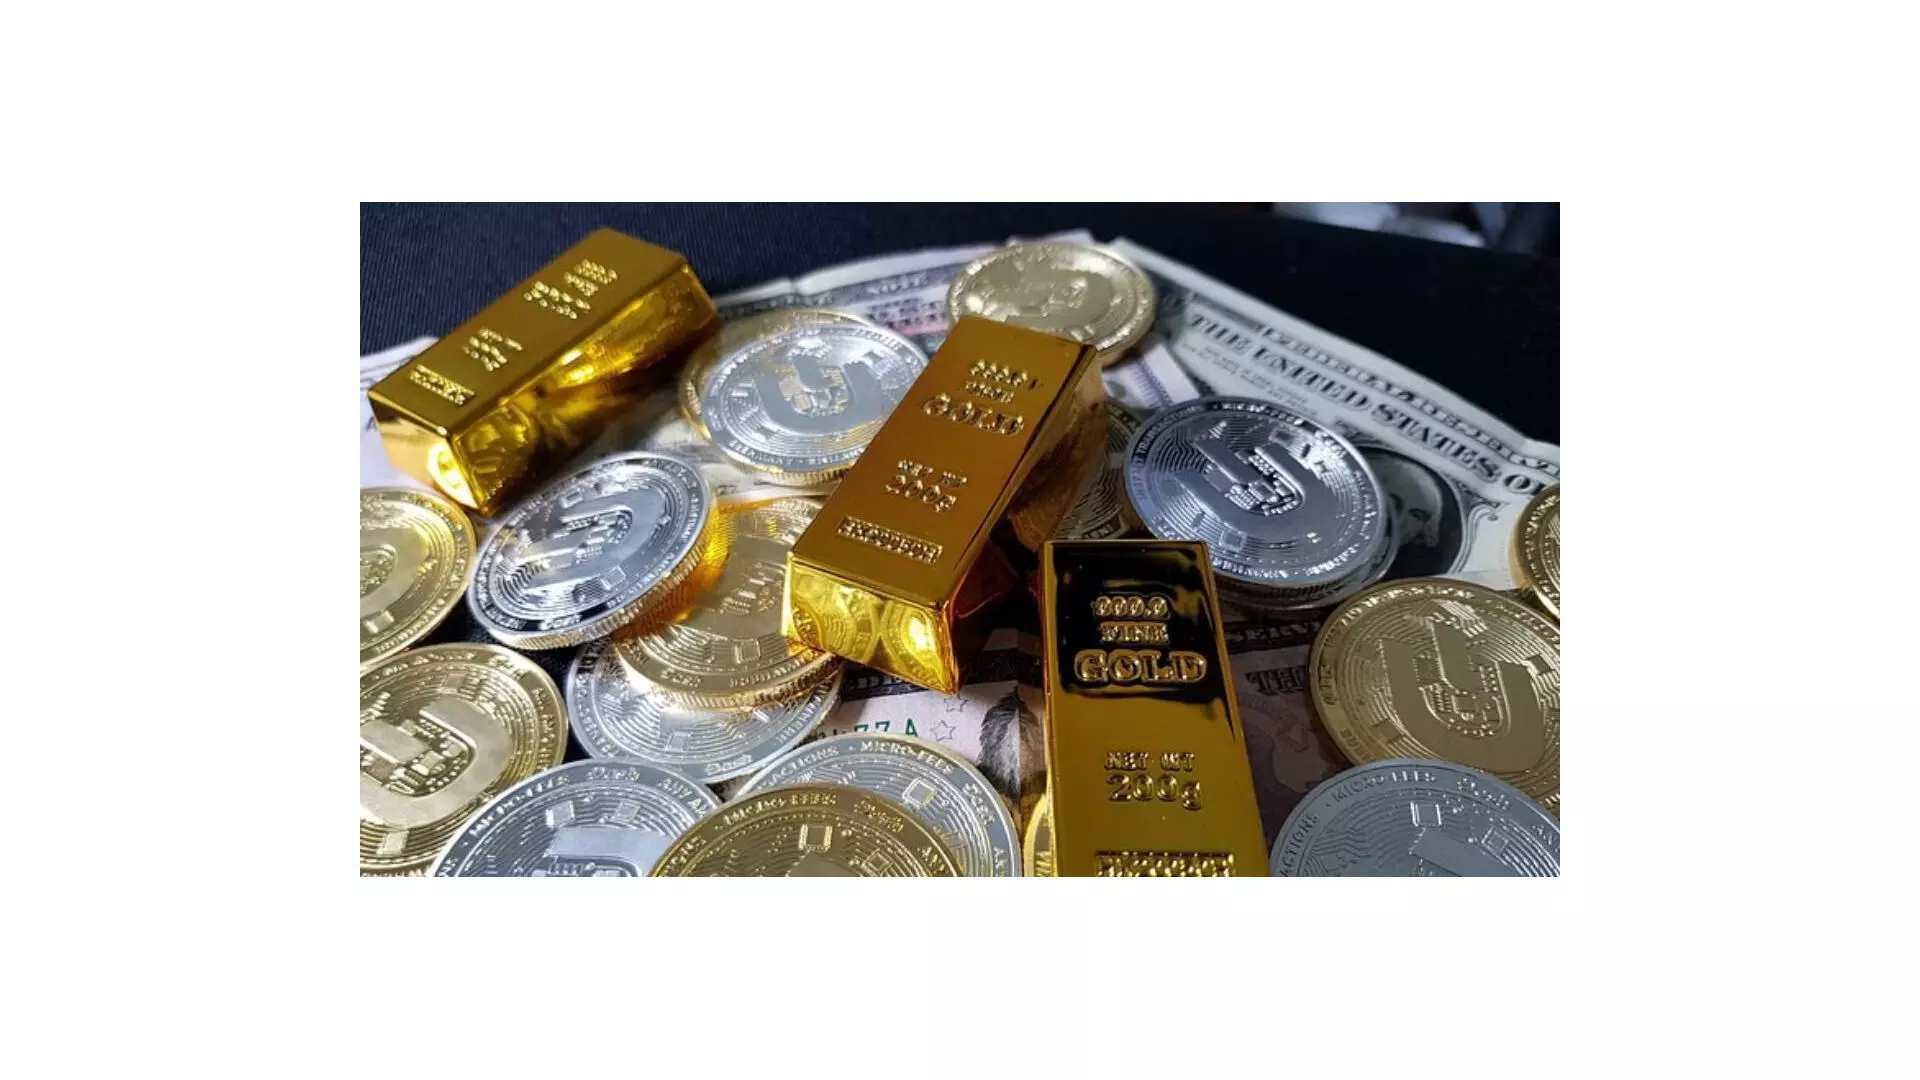 सोना 250 रुपये चढ़ा; चांदी 1700 रुपये प्रति किलो उछली